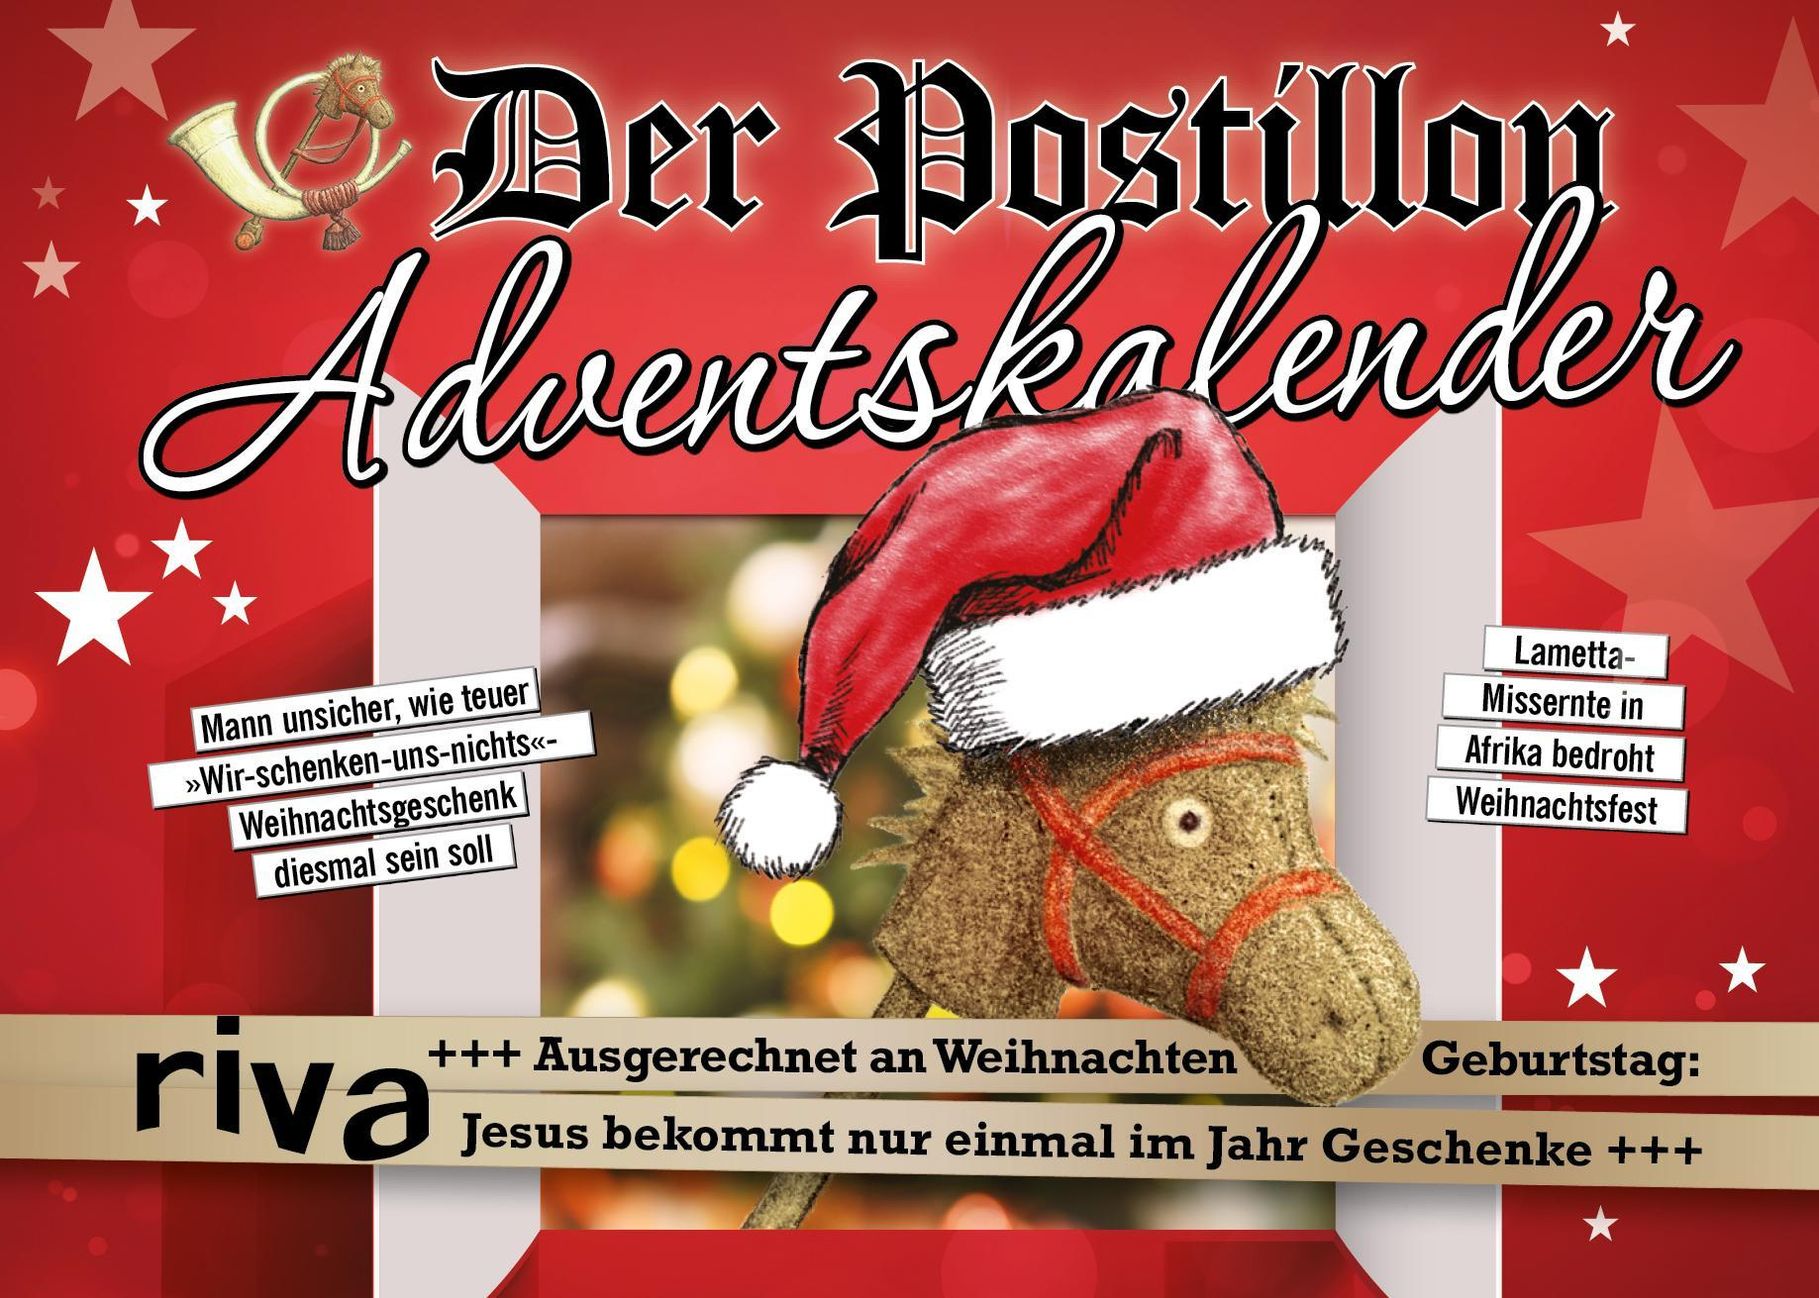 Der Postillon Adventskalender - Kalender bei Weltbild.de kaufen